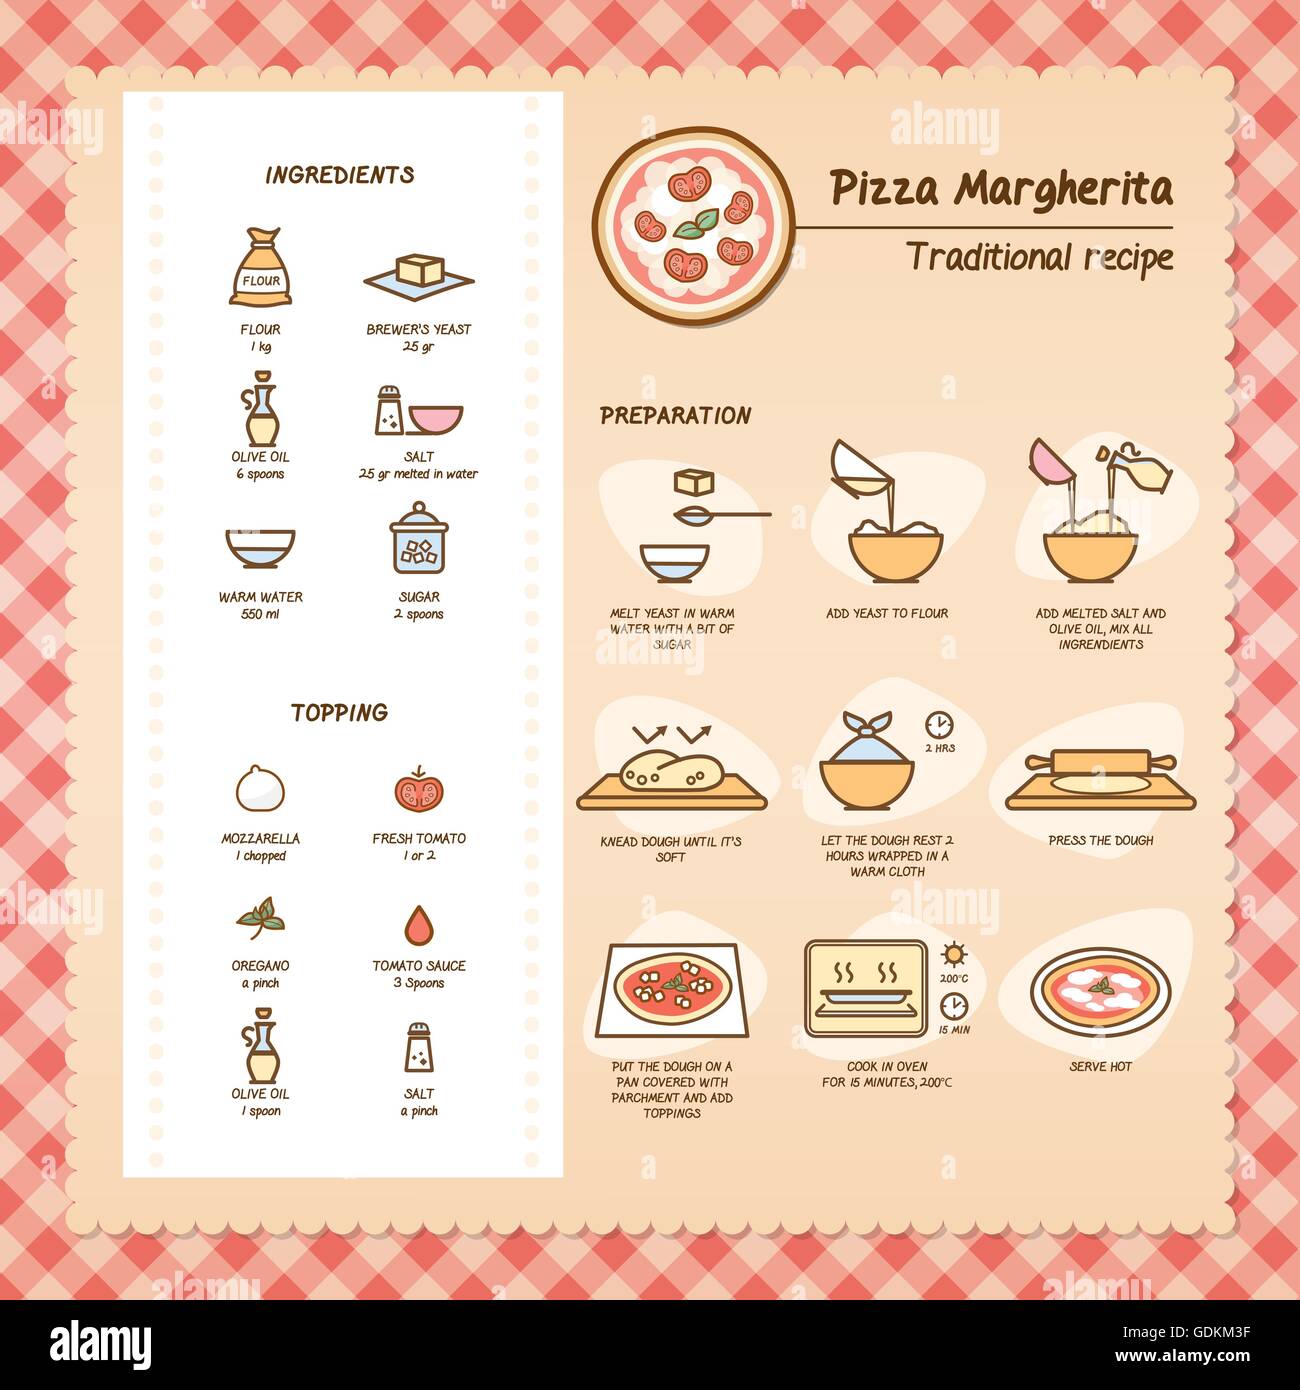 Pizza Margherita recette traditionnelle avec des ingrédients et de la préparation Illustration de Vecteur